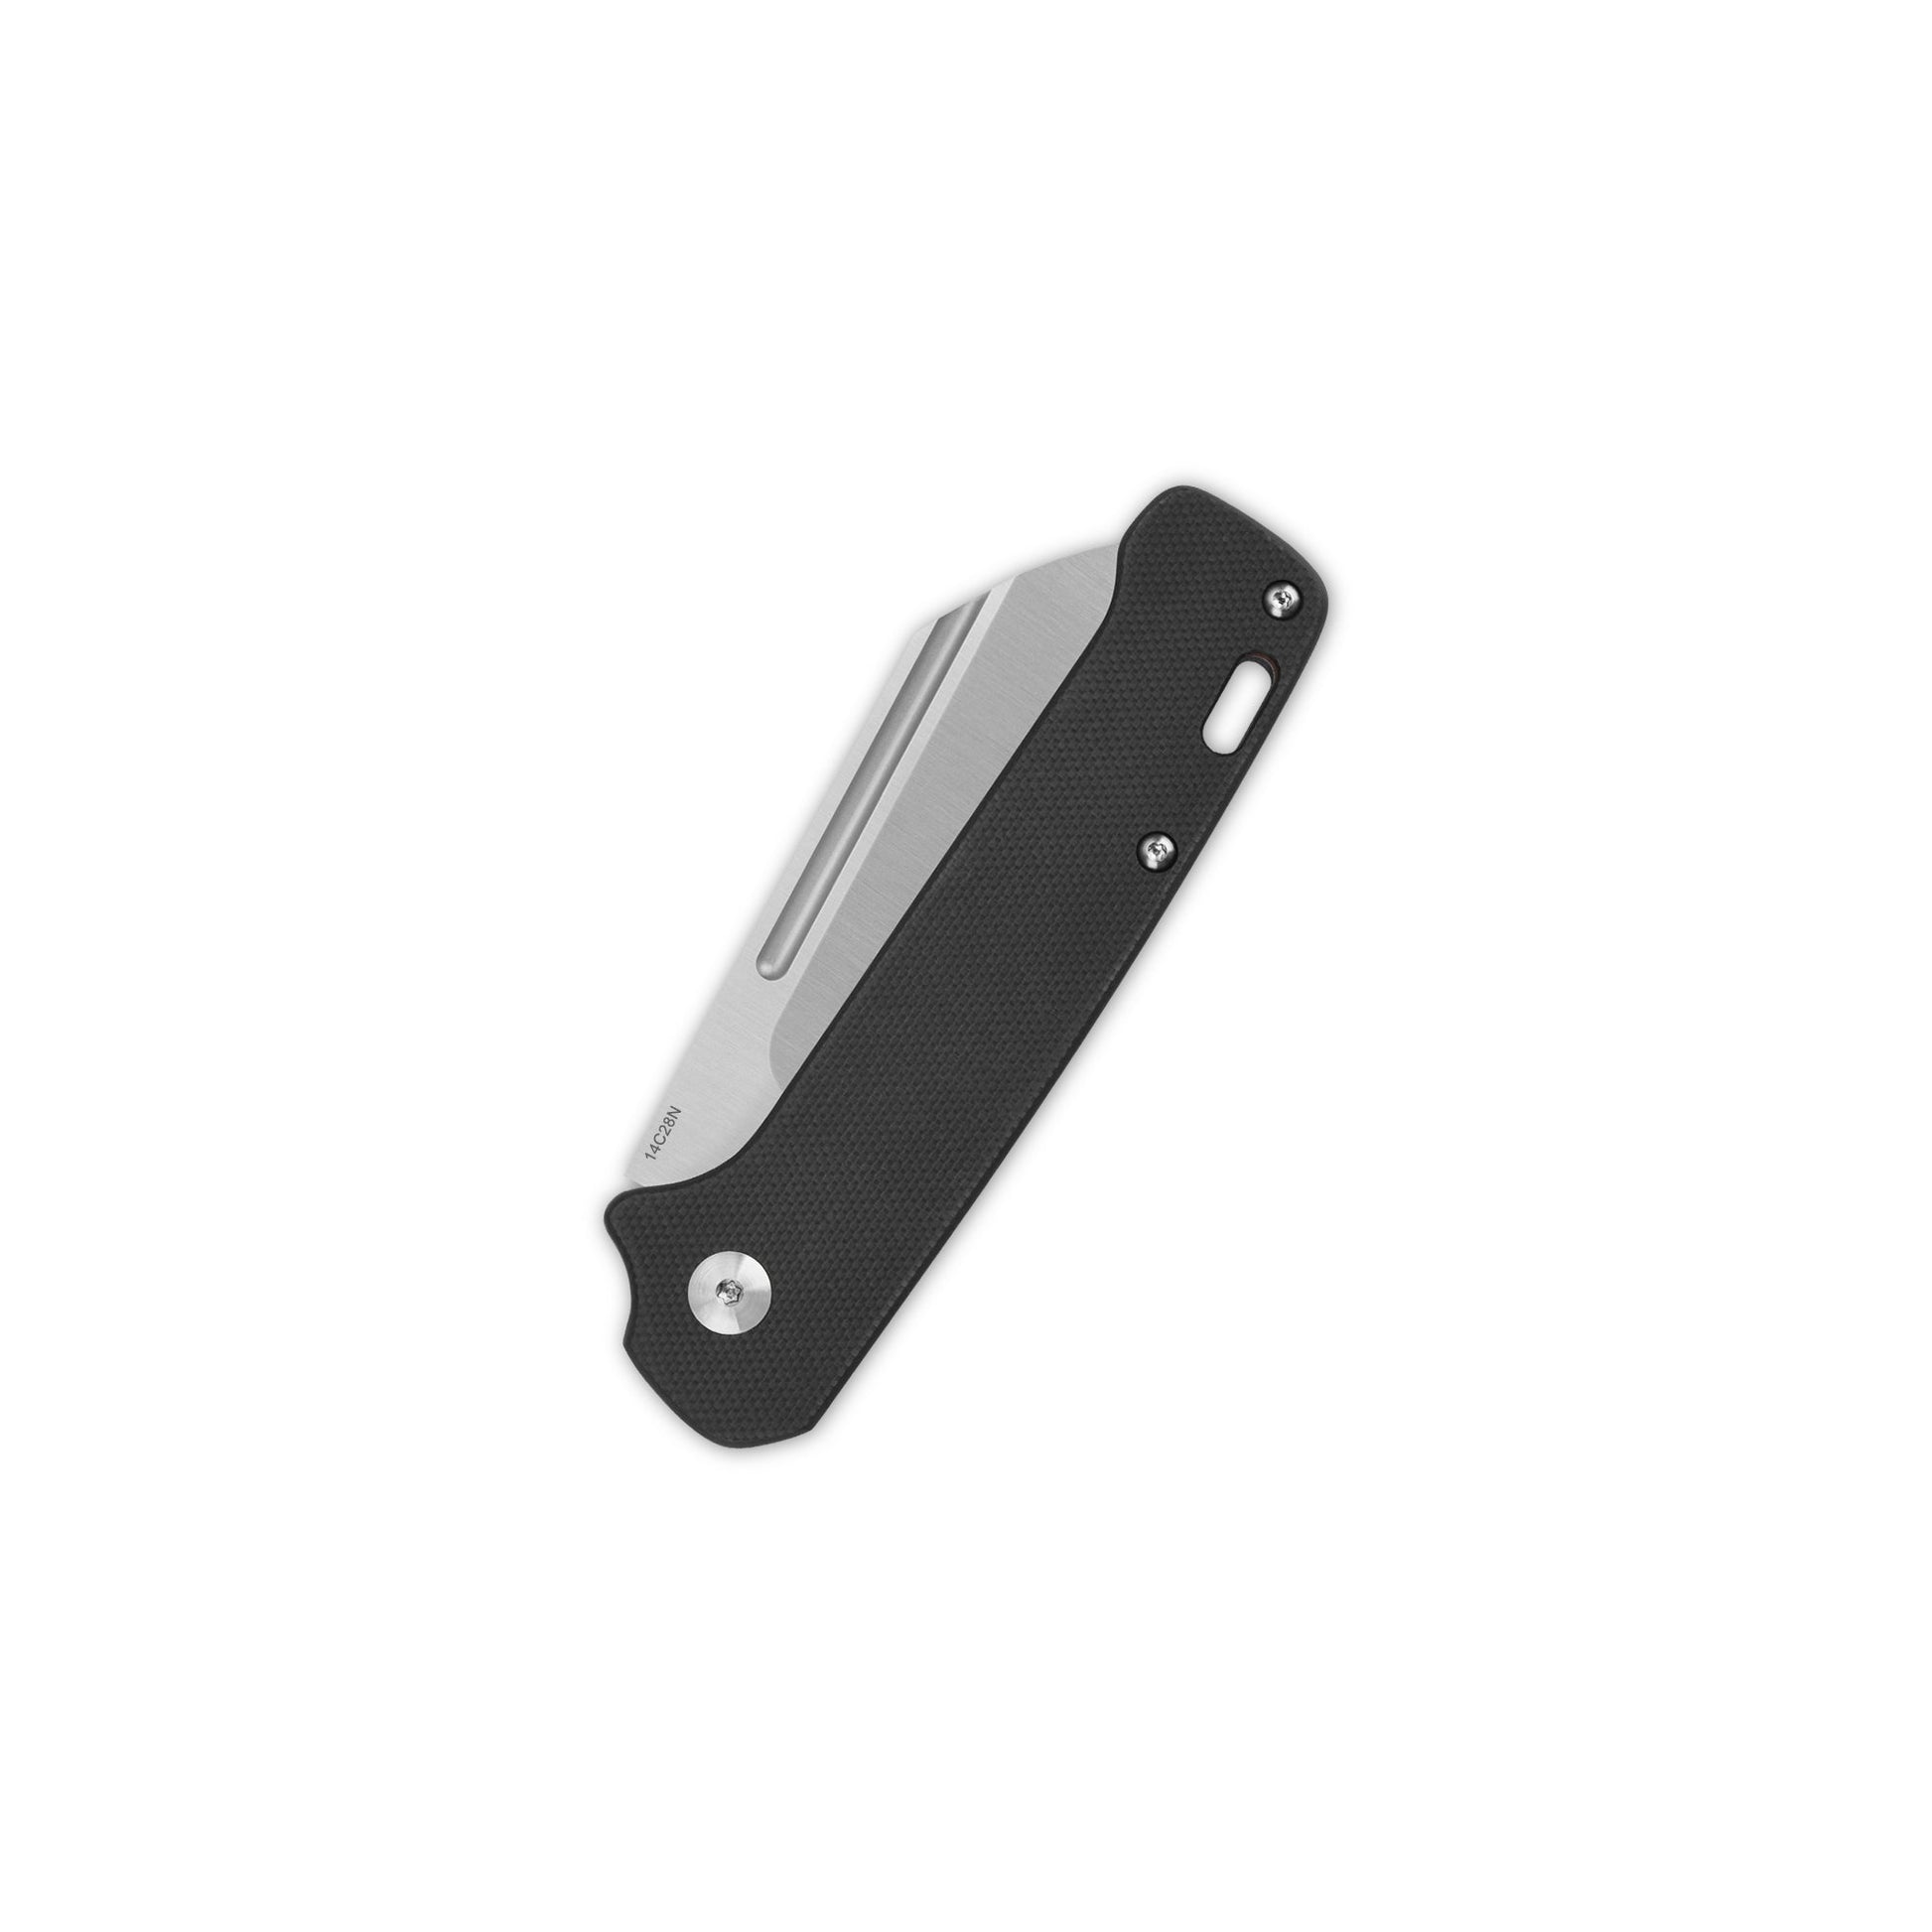 Penguin Slip Joint - Black/Red G10-QSP-OnlyKnives